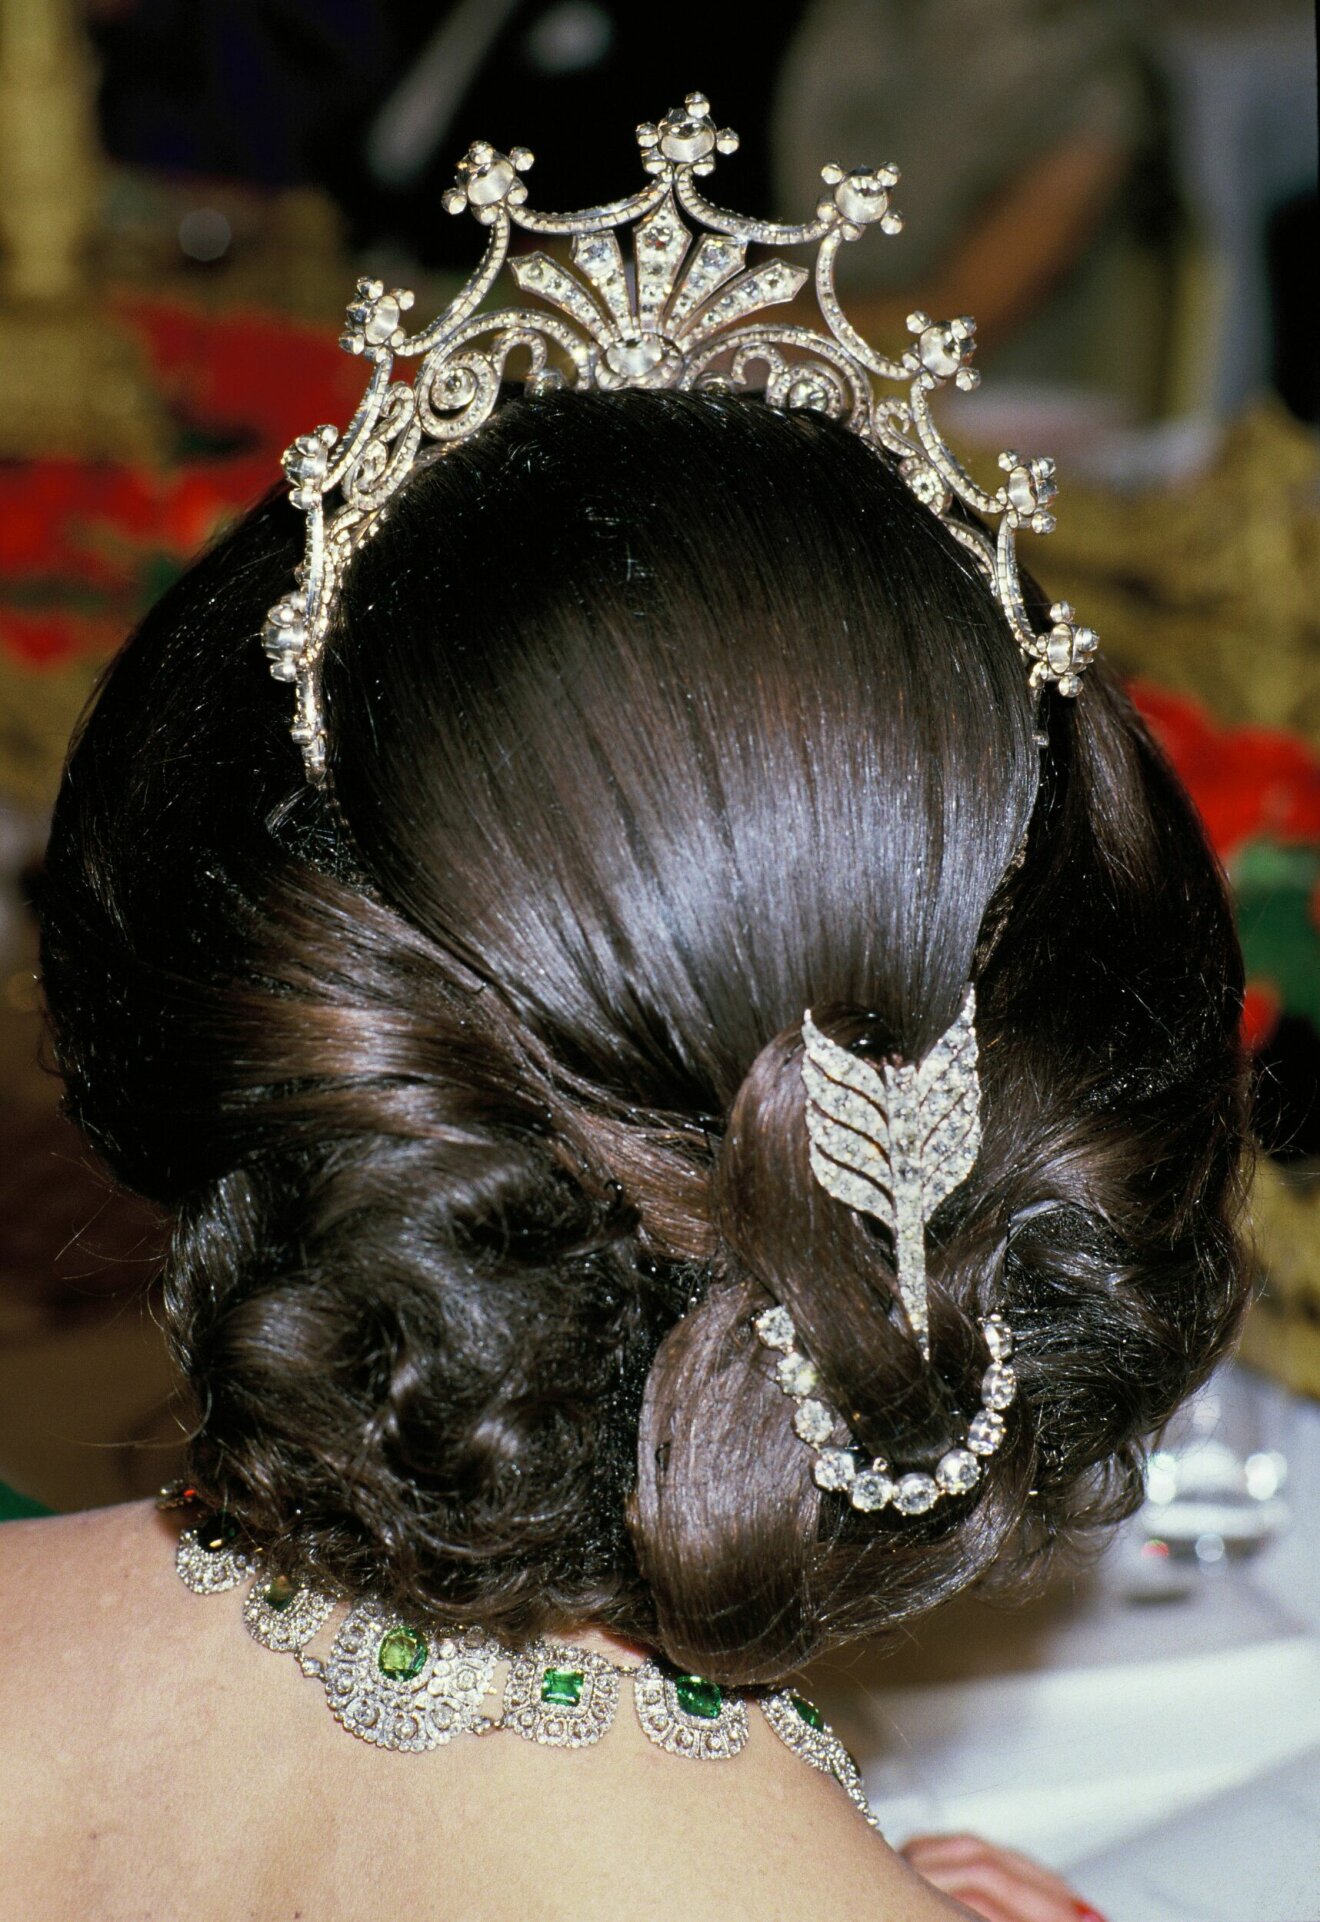 Drottning Silvia med diamantpilen i håruppsättningen.